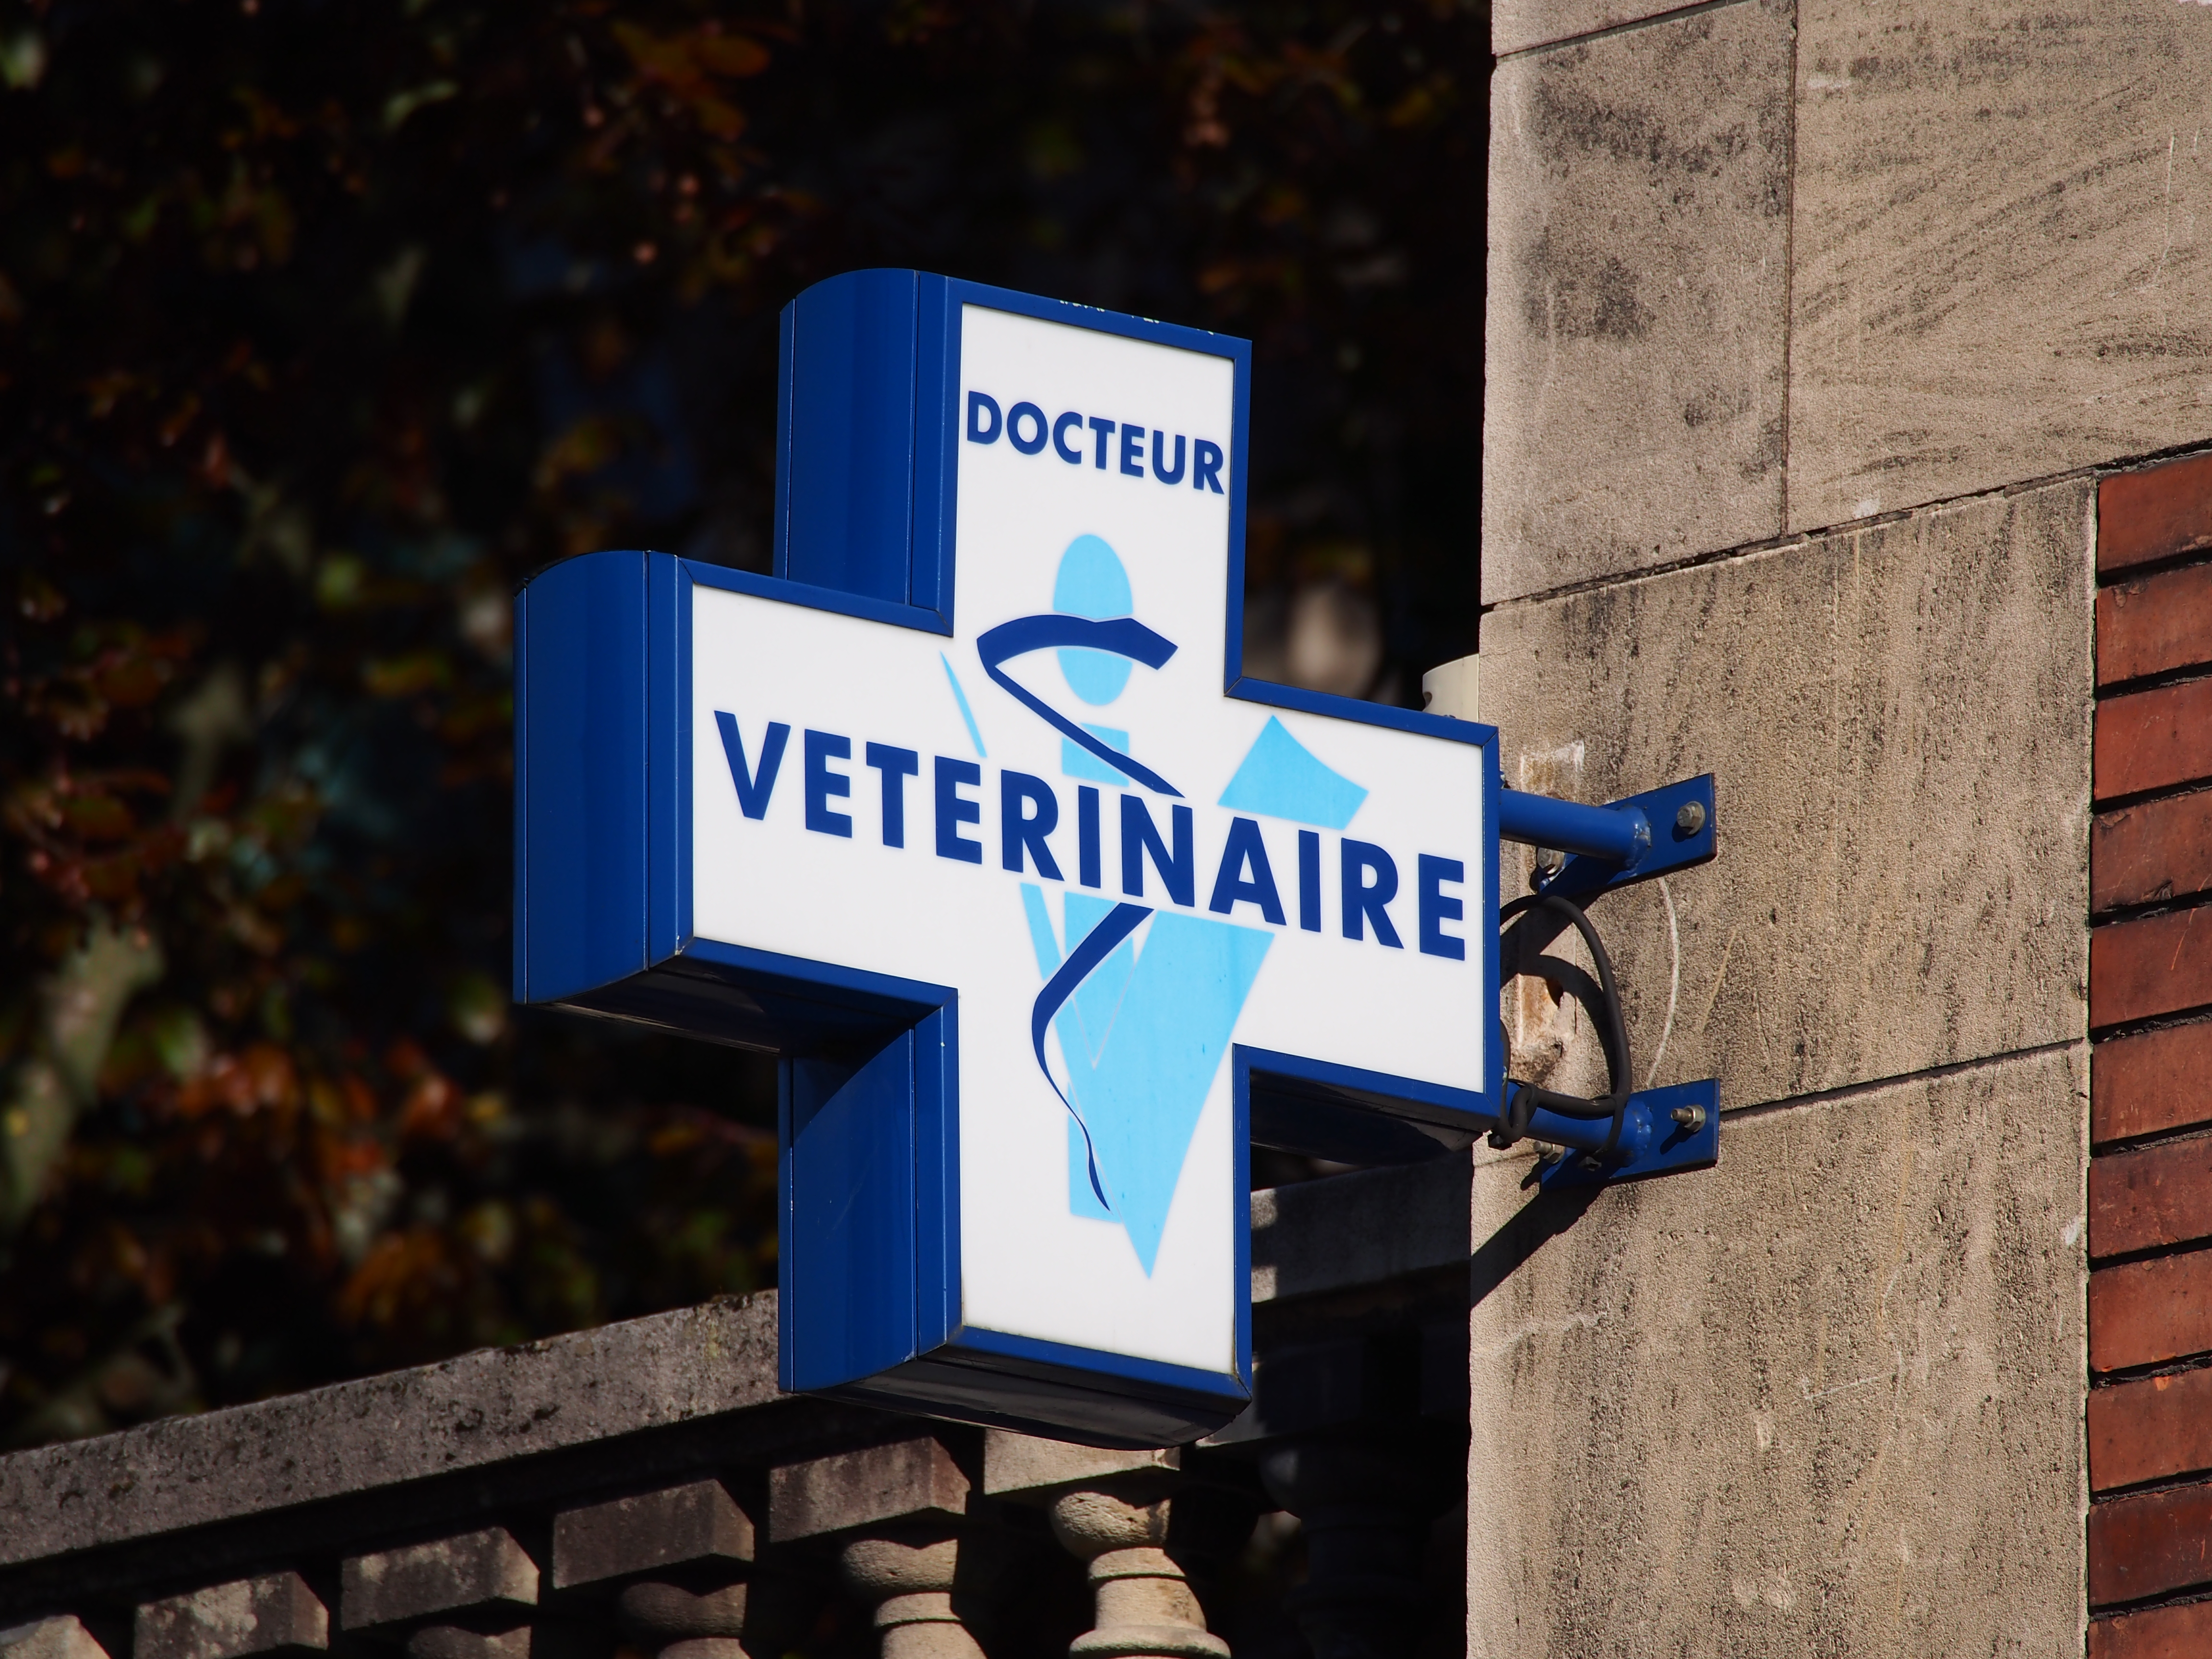     Urgences vétérinaires : la profession se défend

